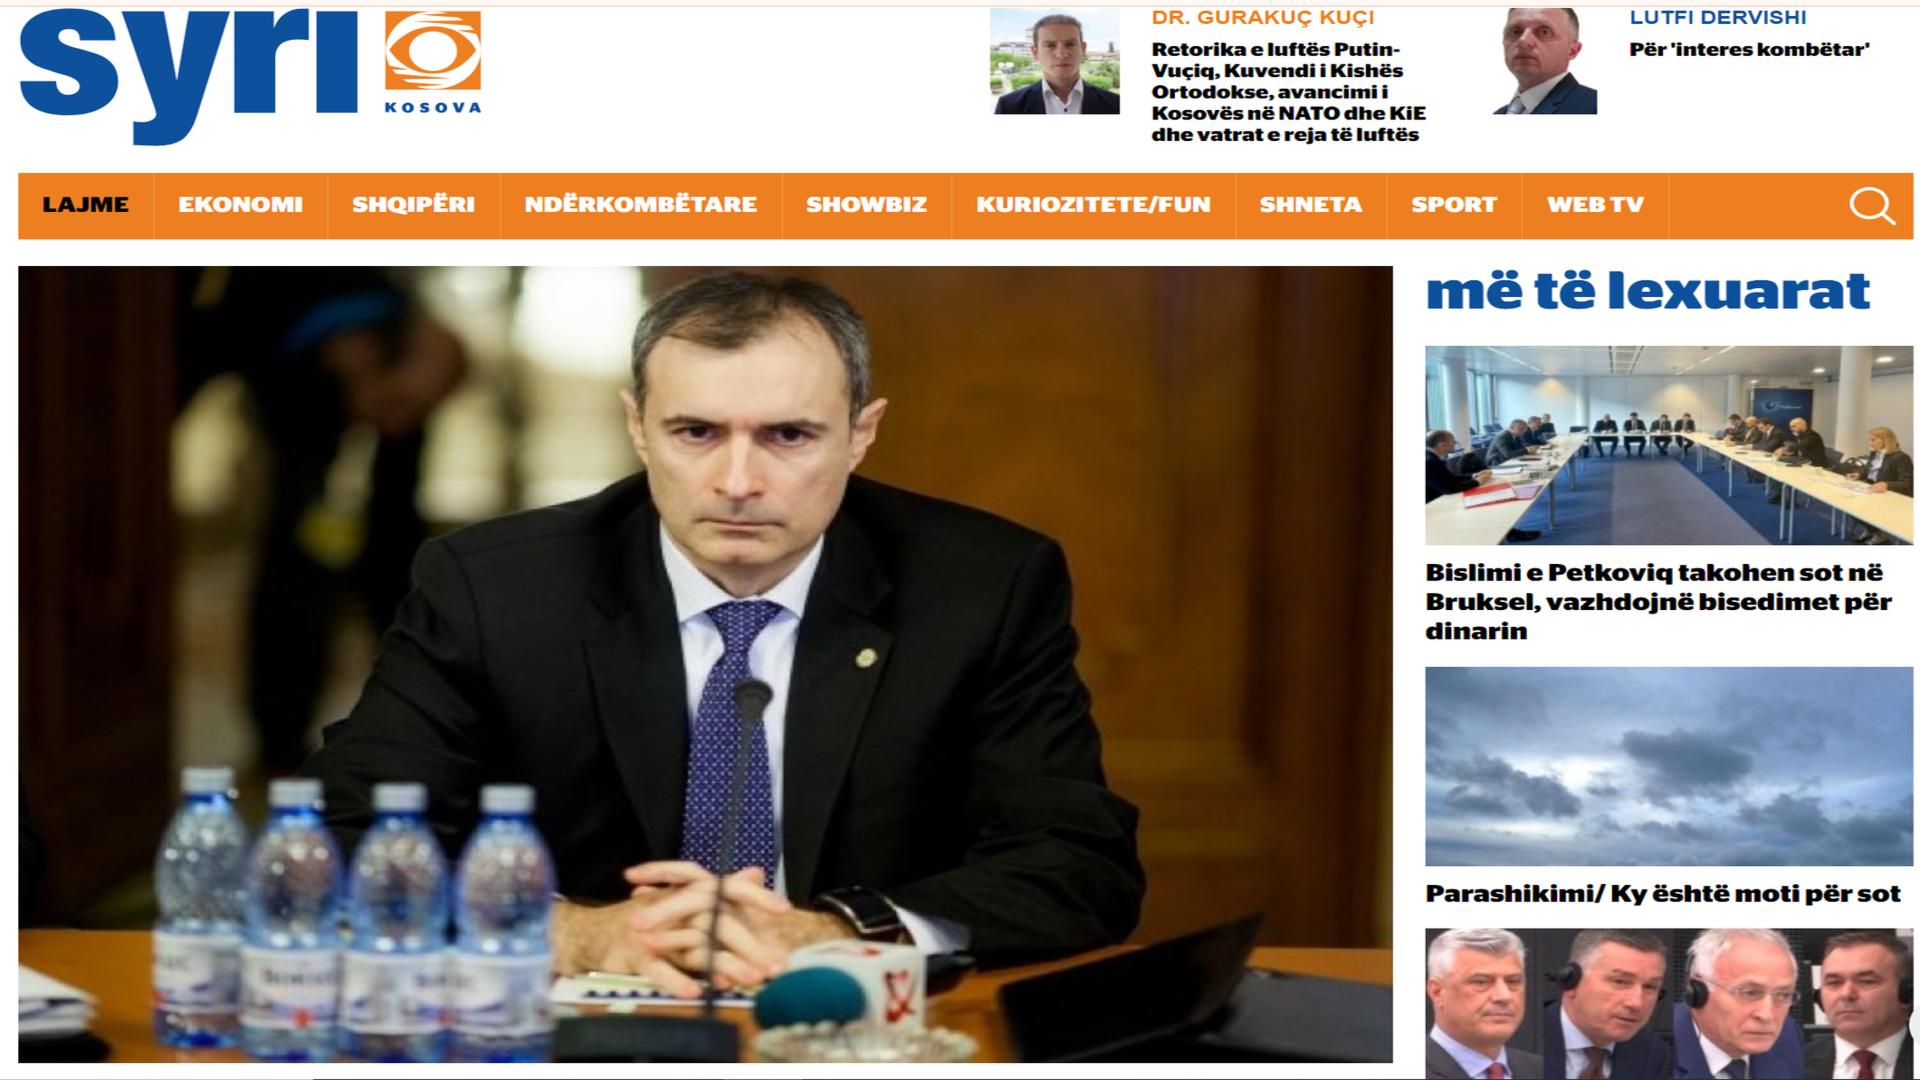 Articol în presa albaneză despre fostul adjunct al SRI